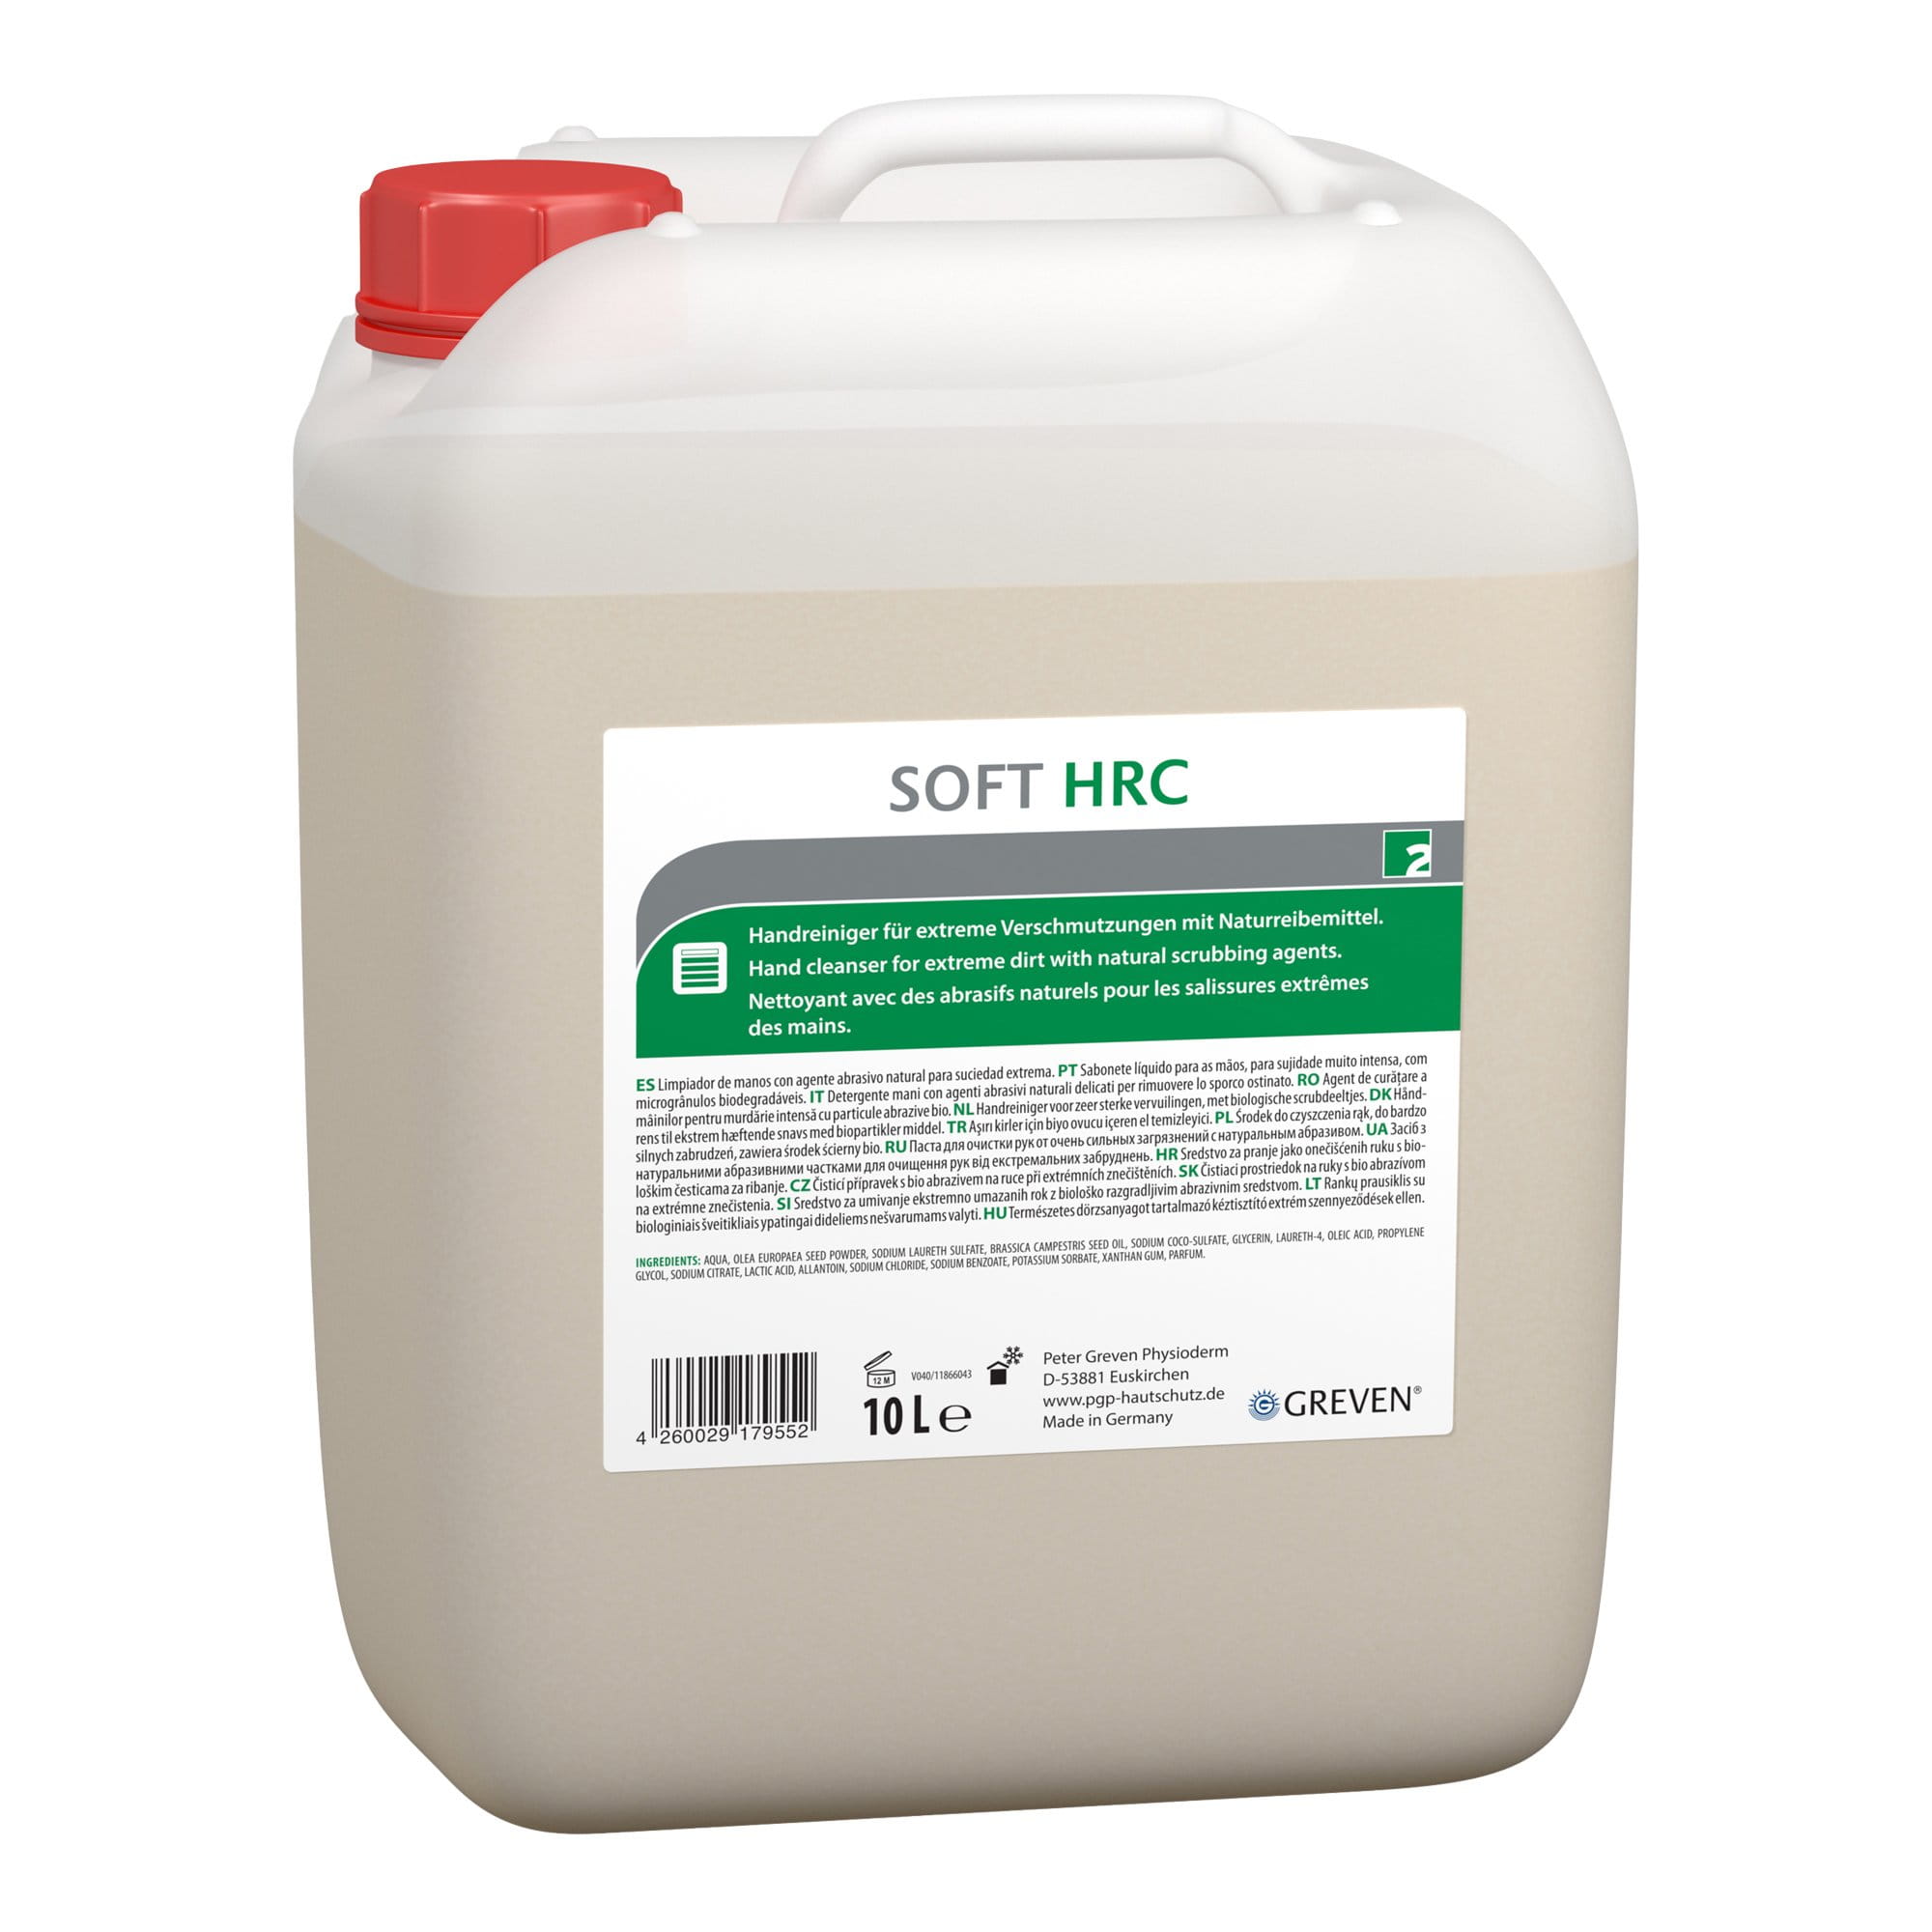 GREVEN SOFT HRC Handreiniger 10 Liter Kanister 14238-005_1